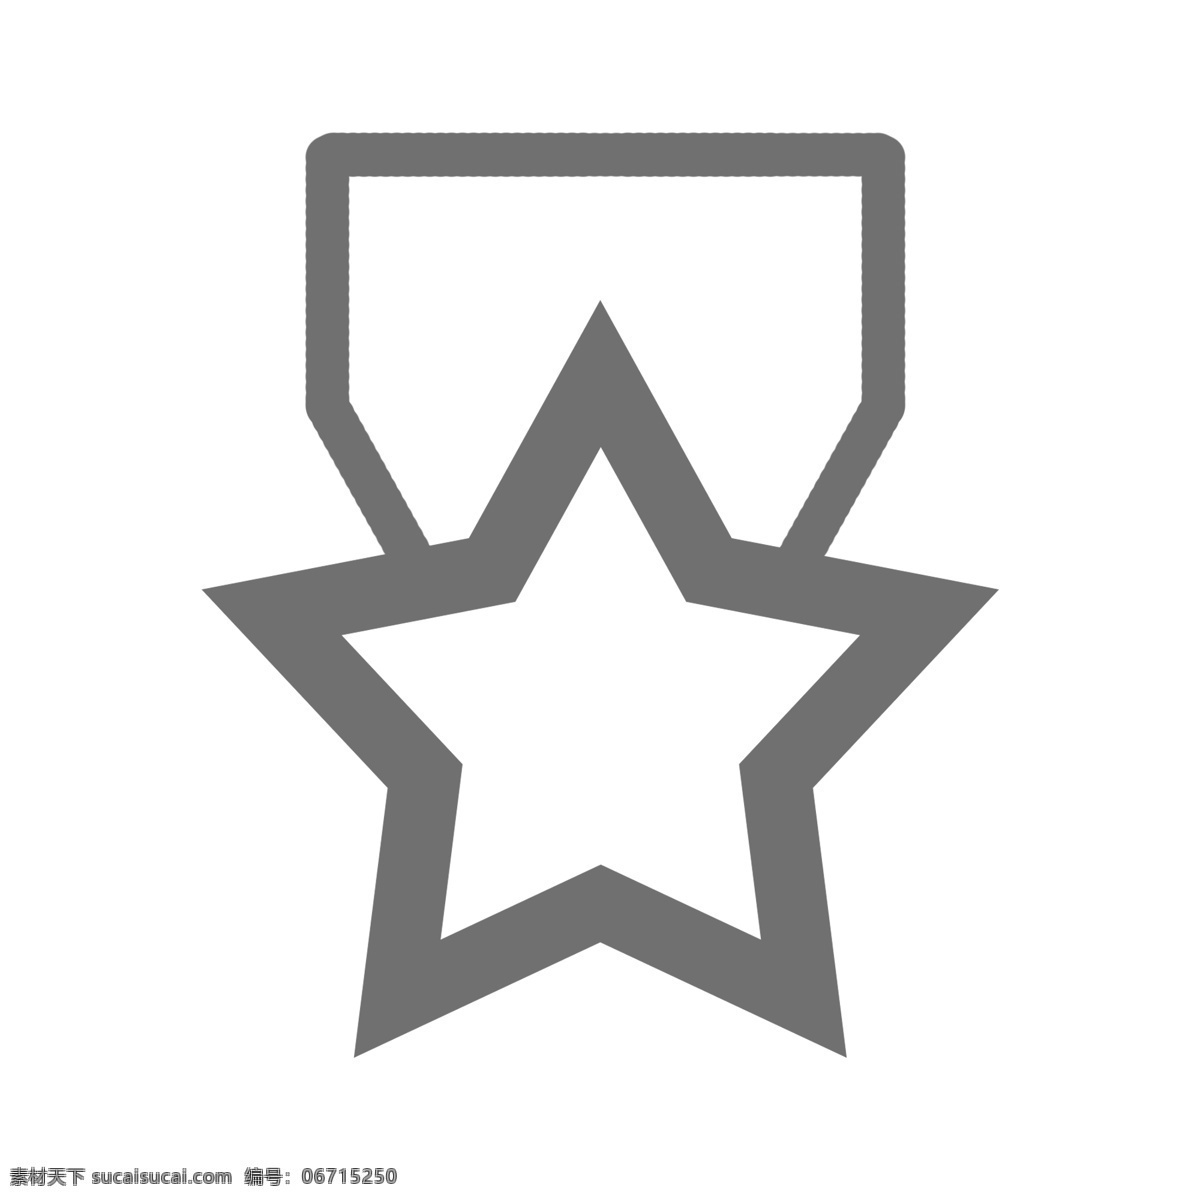 一个 五角星 icon 图标 排行 第一 热销排行